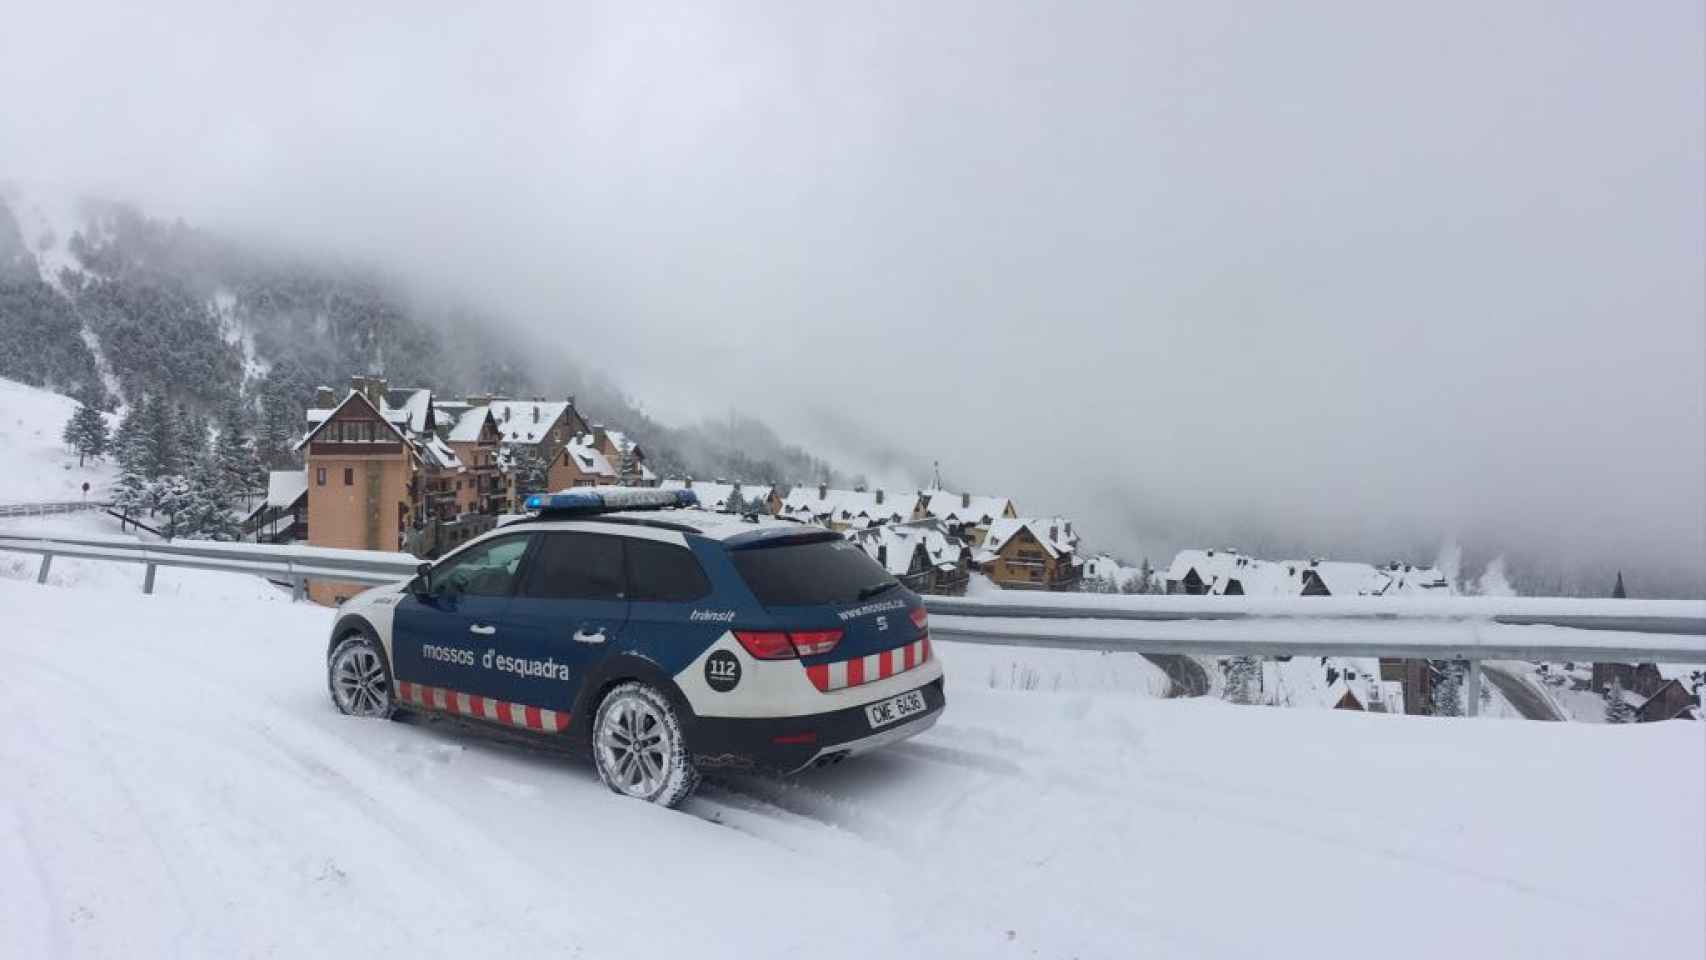 Imagen de un coche patrulla de los Mossos d'Esquadra en una zona montañosa de Cataluña llena de nieve / Mossos